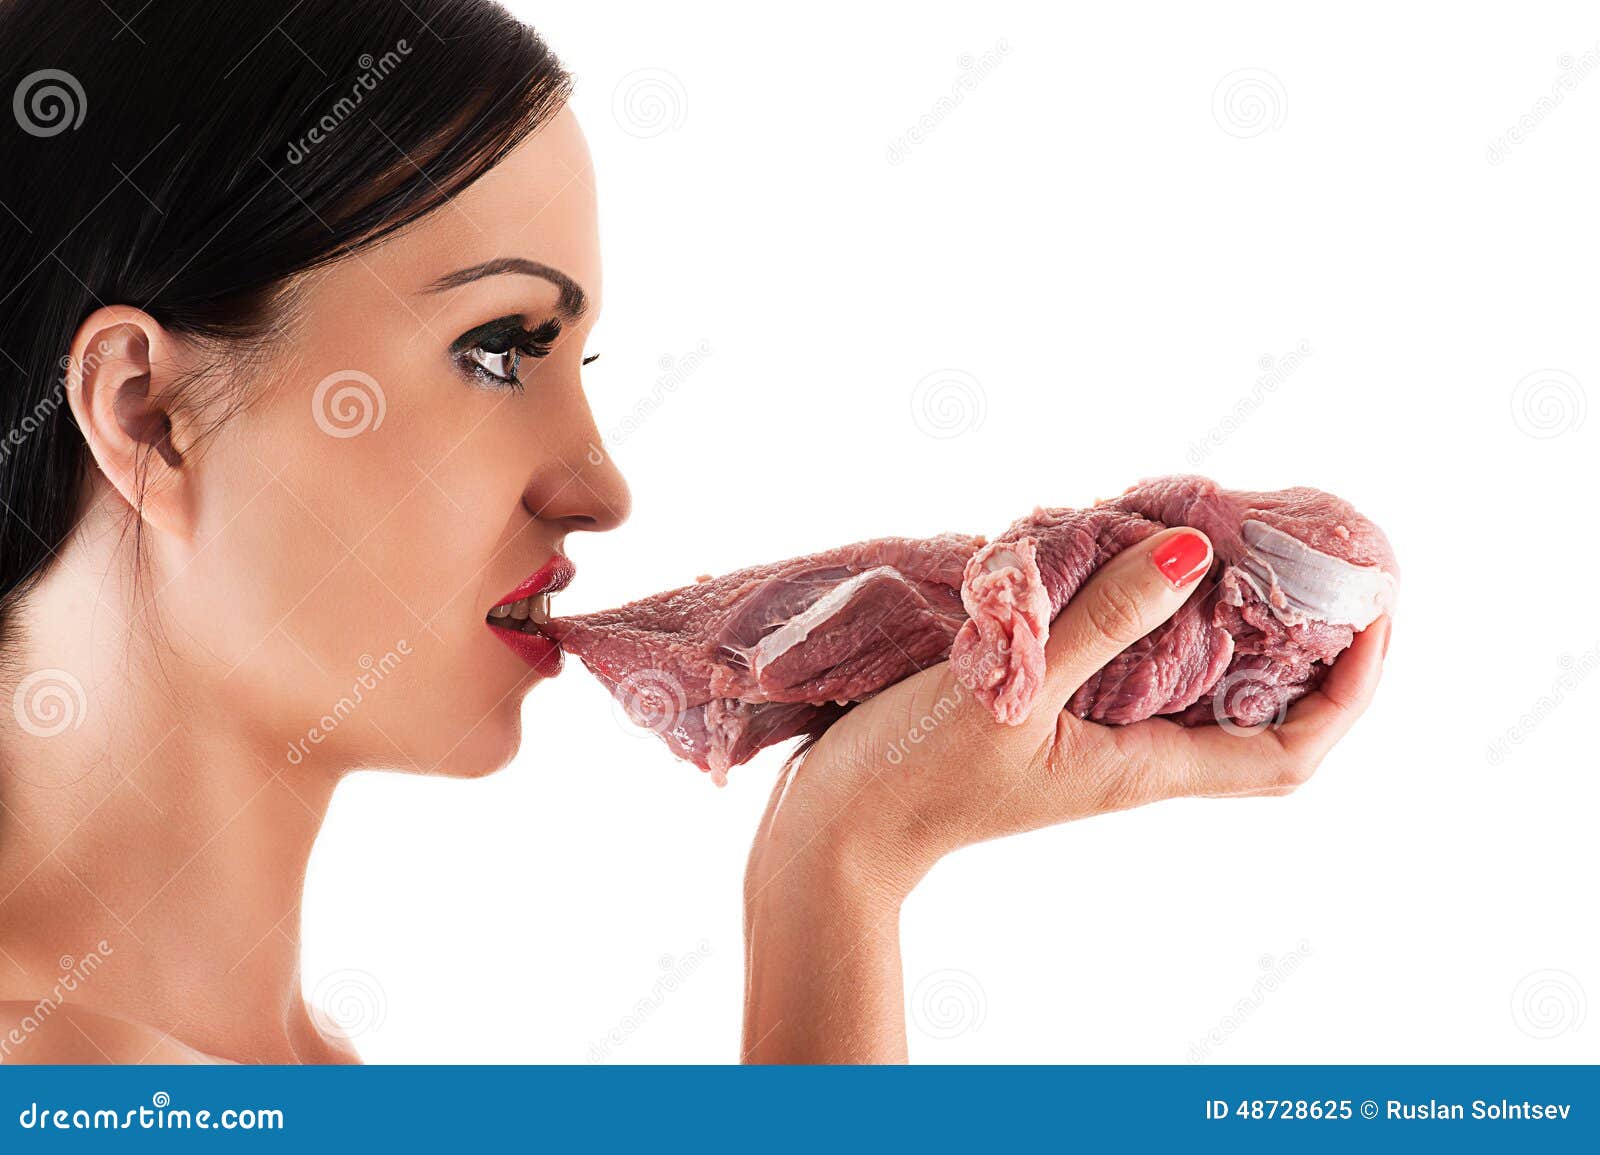 Что будет есть съесть сырое мясо. Девушка ест сырое мясо.